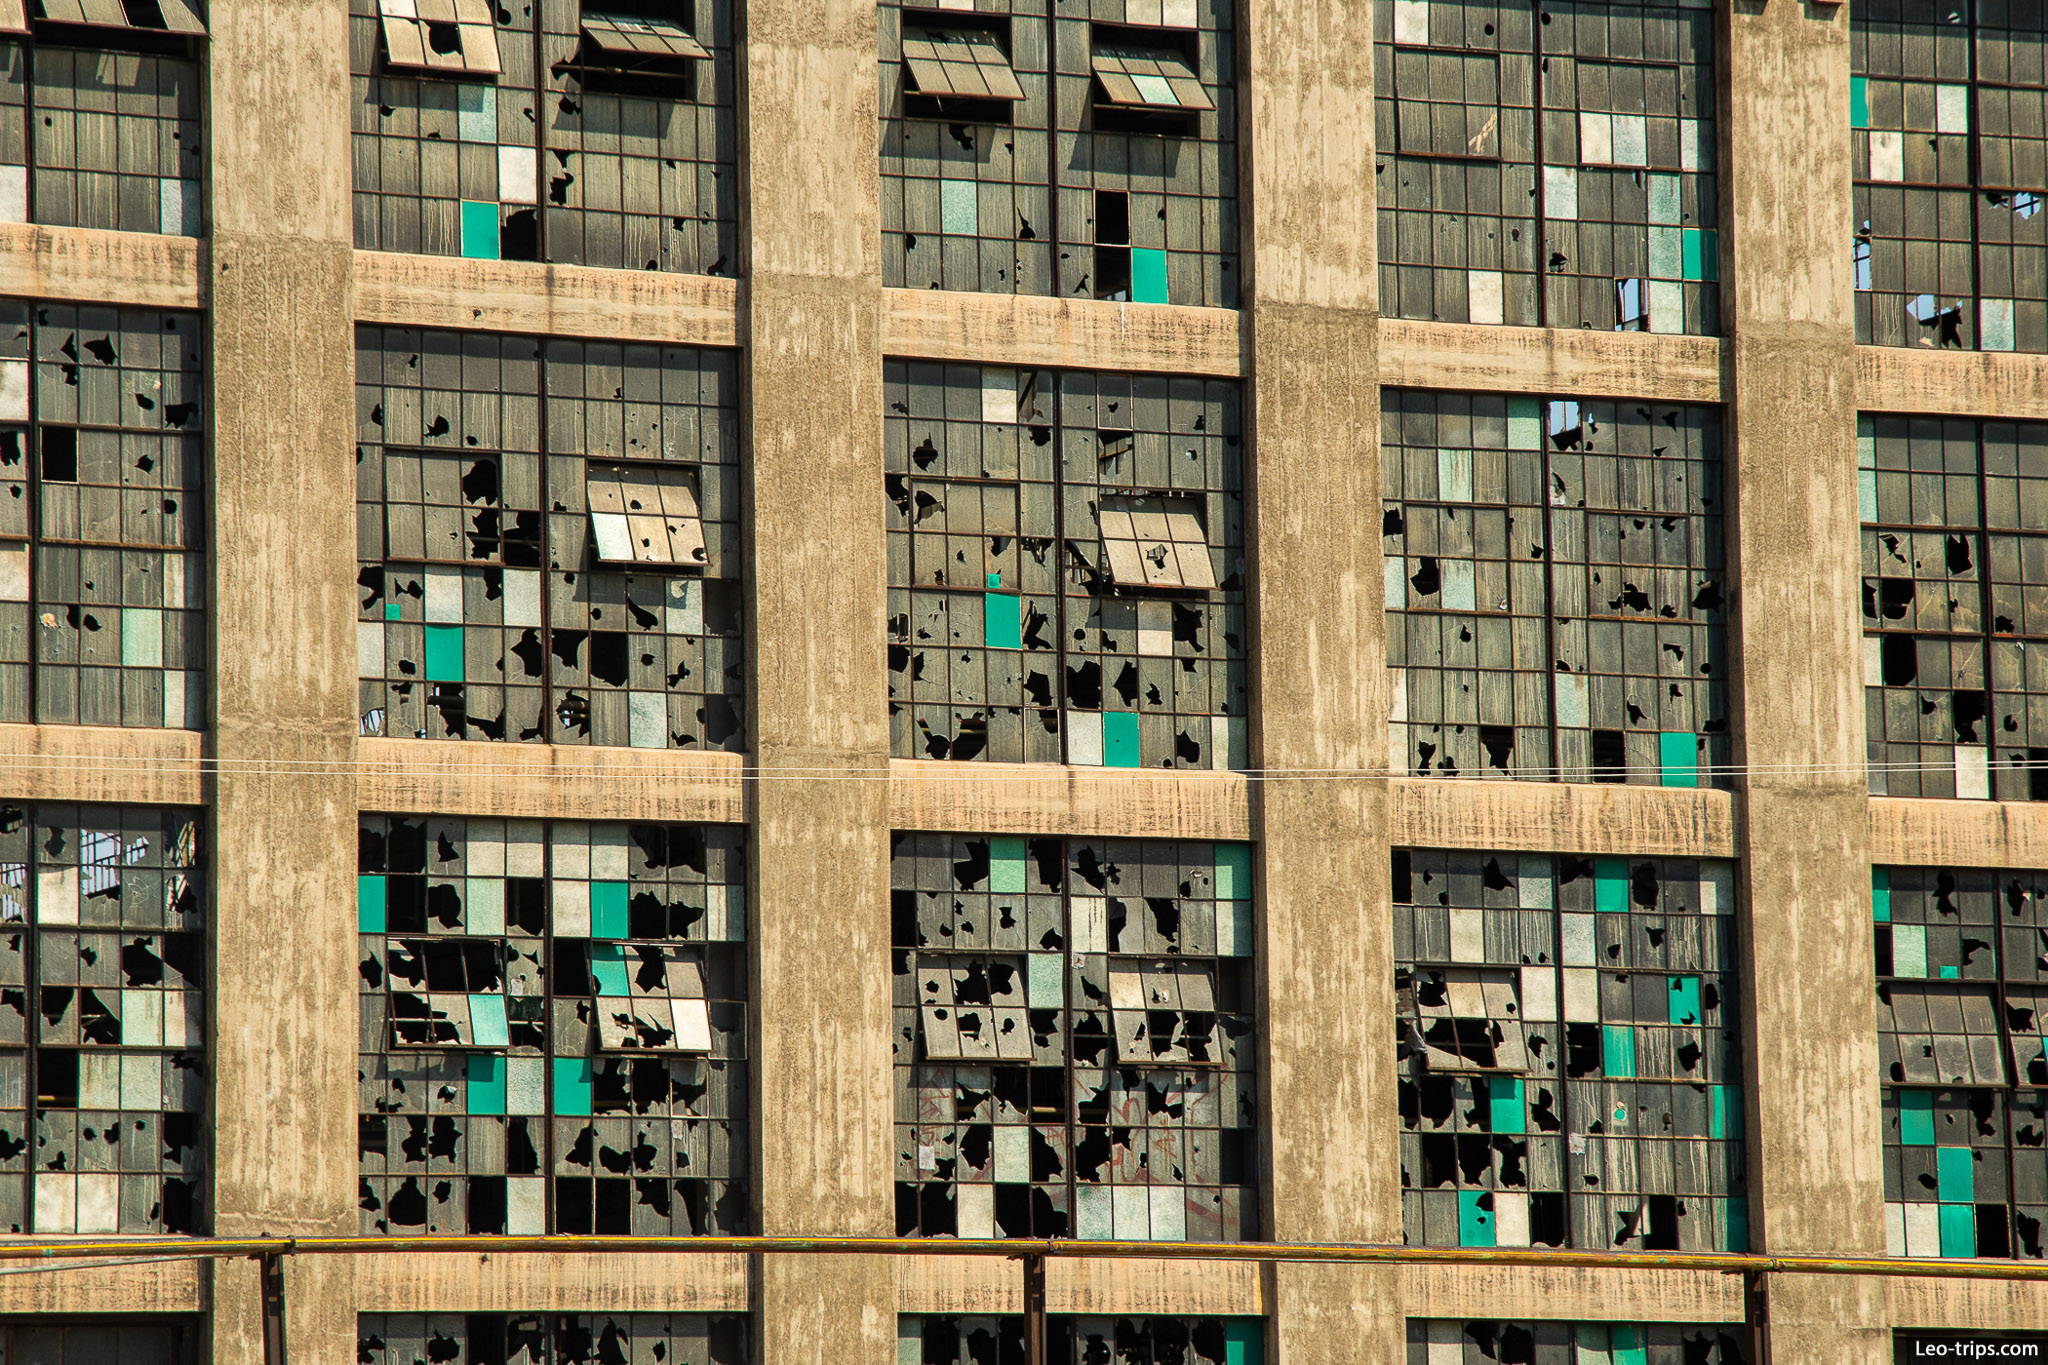 broken windows in building albuquerque